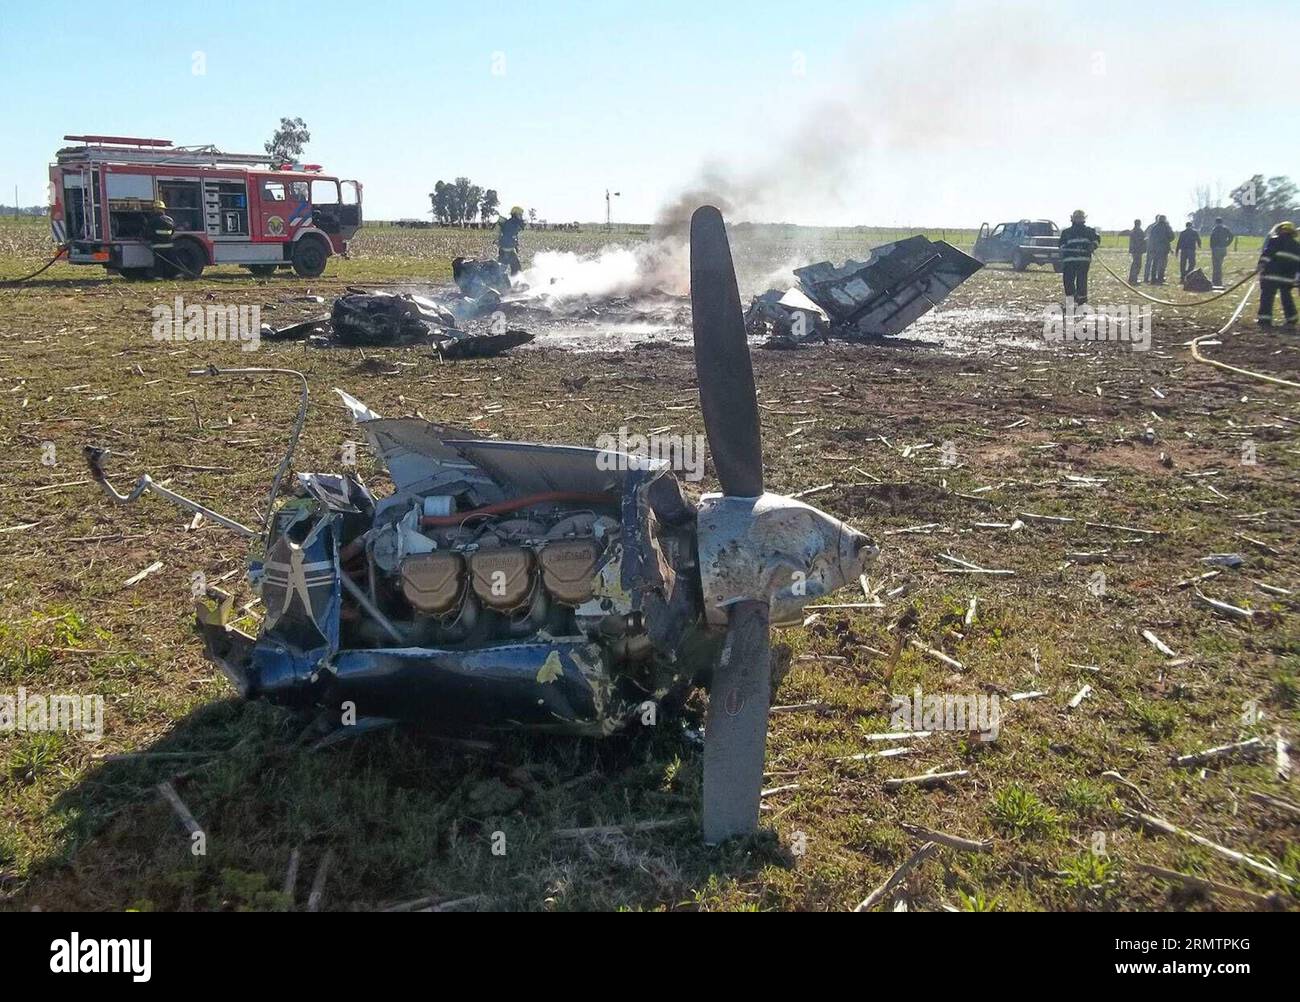 La foto scattata il 15 settembre 2014 mostra i detriti di un aereo precipitato vicino all'aeroporto del generale Villegas, 470 km a ovest di Buenos Aires, il 15 settembre 2014. Un piccolo aereo si è schiantato lunedì vicino all'aeroporto del generale Villegas, ferendo i suoi due membri dell'equipaggio in varie parti. ) ARGENTINA-BUENOS AIRES-INCIDENTE-AEREO TELAM PUBLICATIONxNOTxINxCHN la foto scattata IL 15 settembre 2014 mostra i detriti di To schiantato aereo vicino all'aeroporto del generale Villegas 470 km A OVEST di Buenos Aires IL 15 settembre 2014 un piccolo aereo si è schiantato lunedì vicino all'aeroporto del generale Villegas ferendo i suoi due membri dell'equipaggio di vario tipo Foto Stock